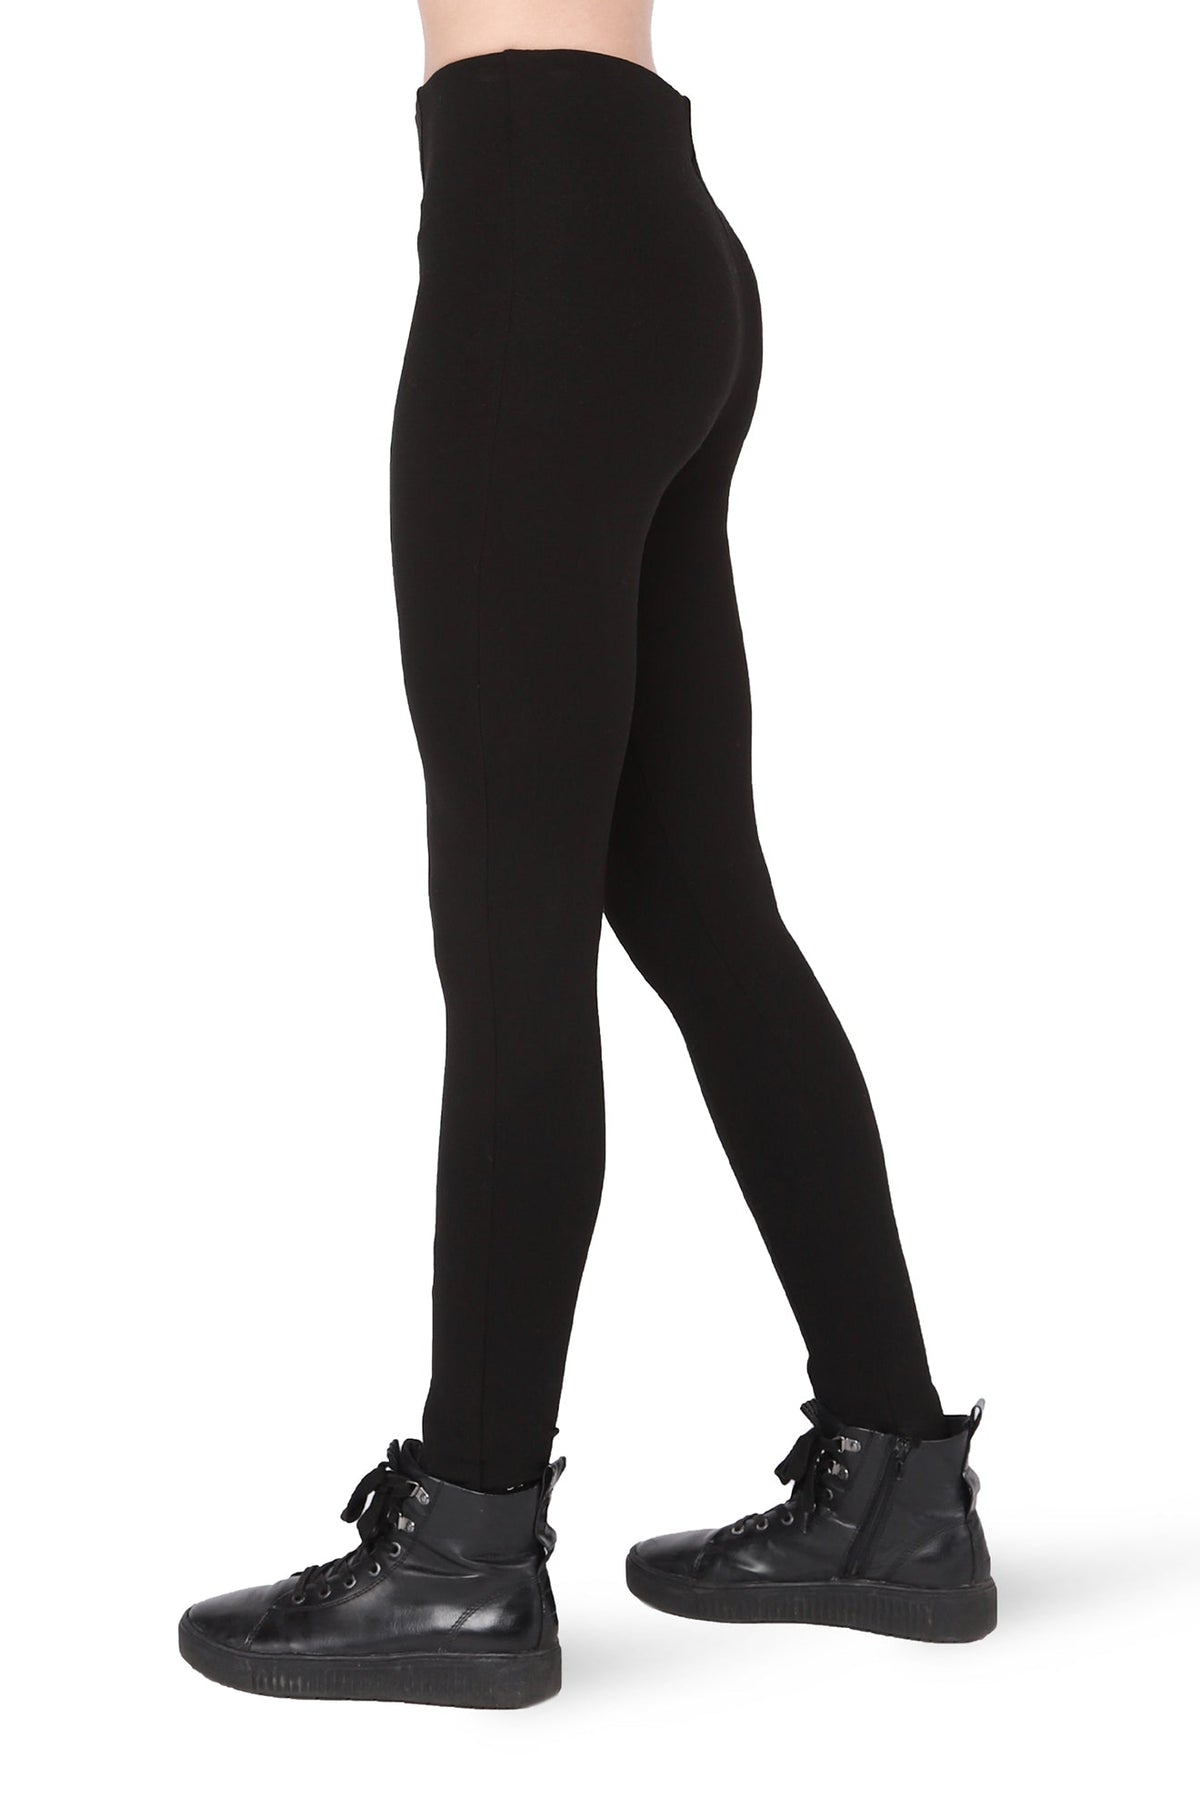 Legging pour femme par Black tape | 2222221 T Noir/10001-BLACK | Boutique Vvög, vêtements mode pour homme et femme